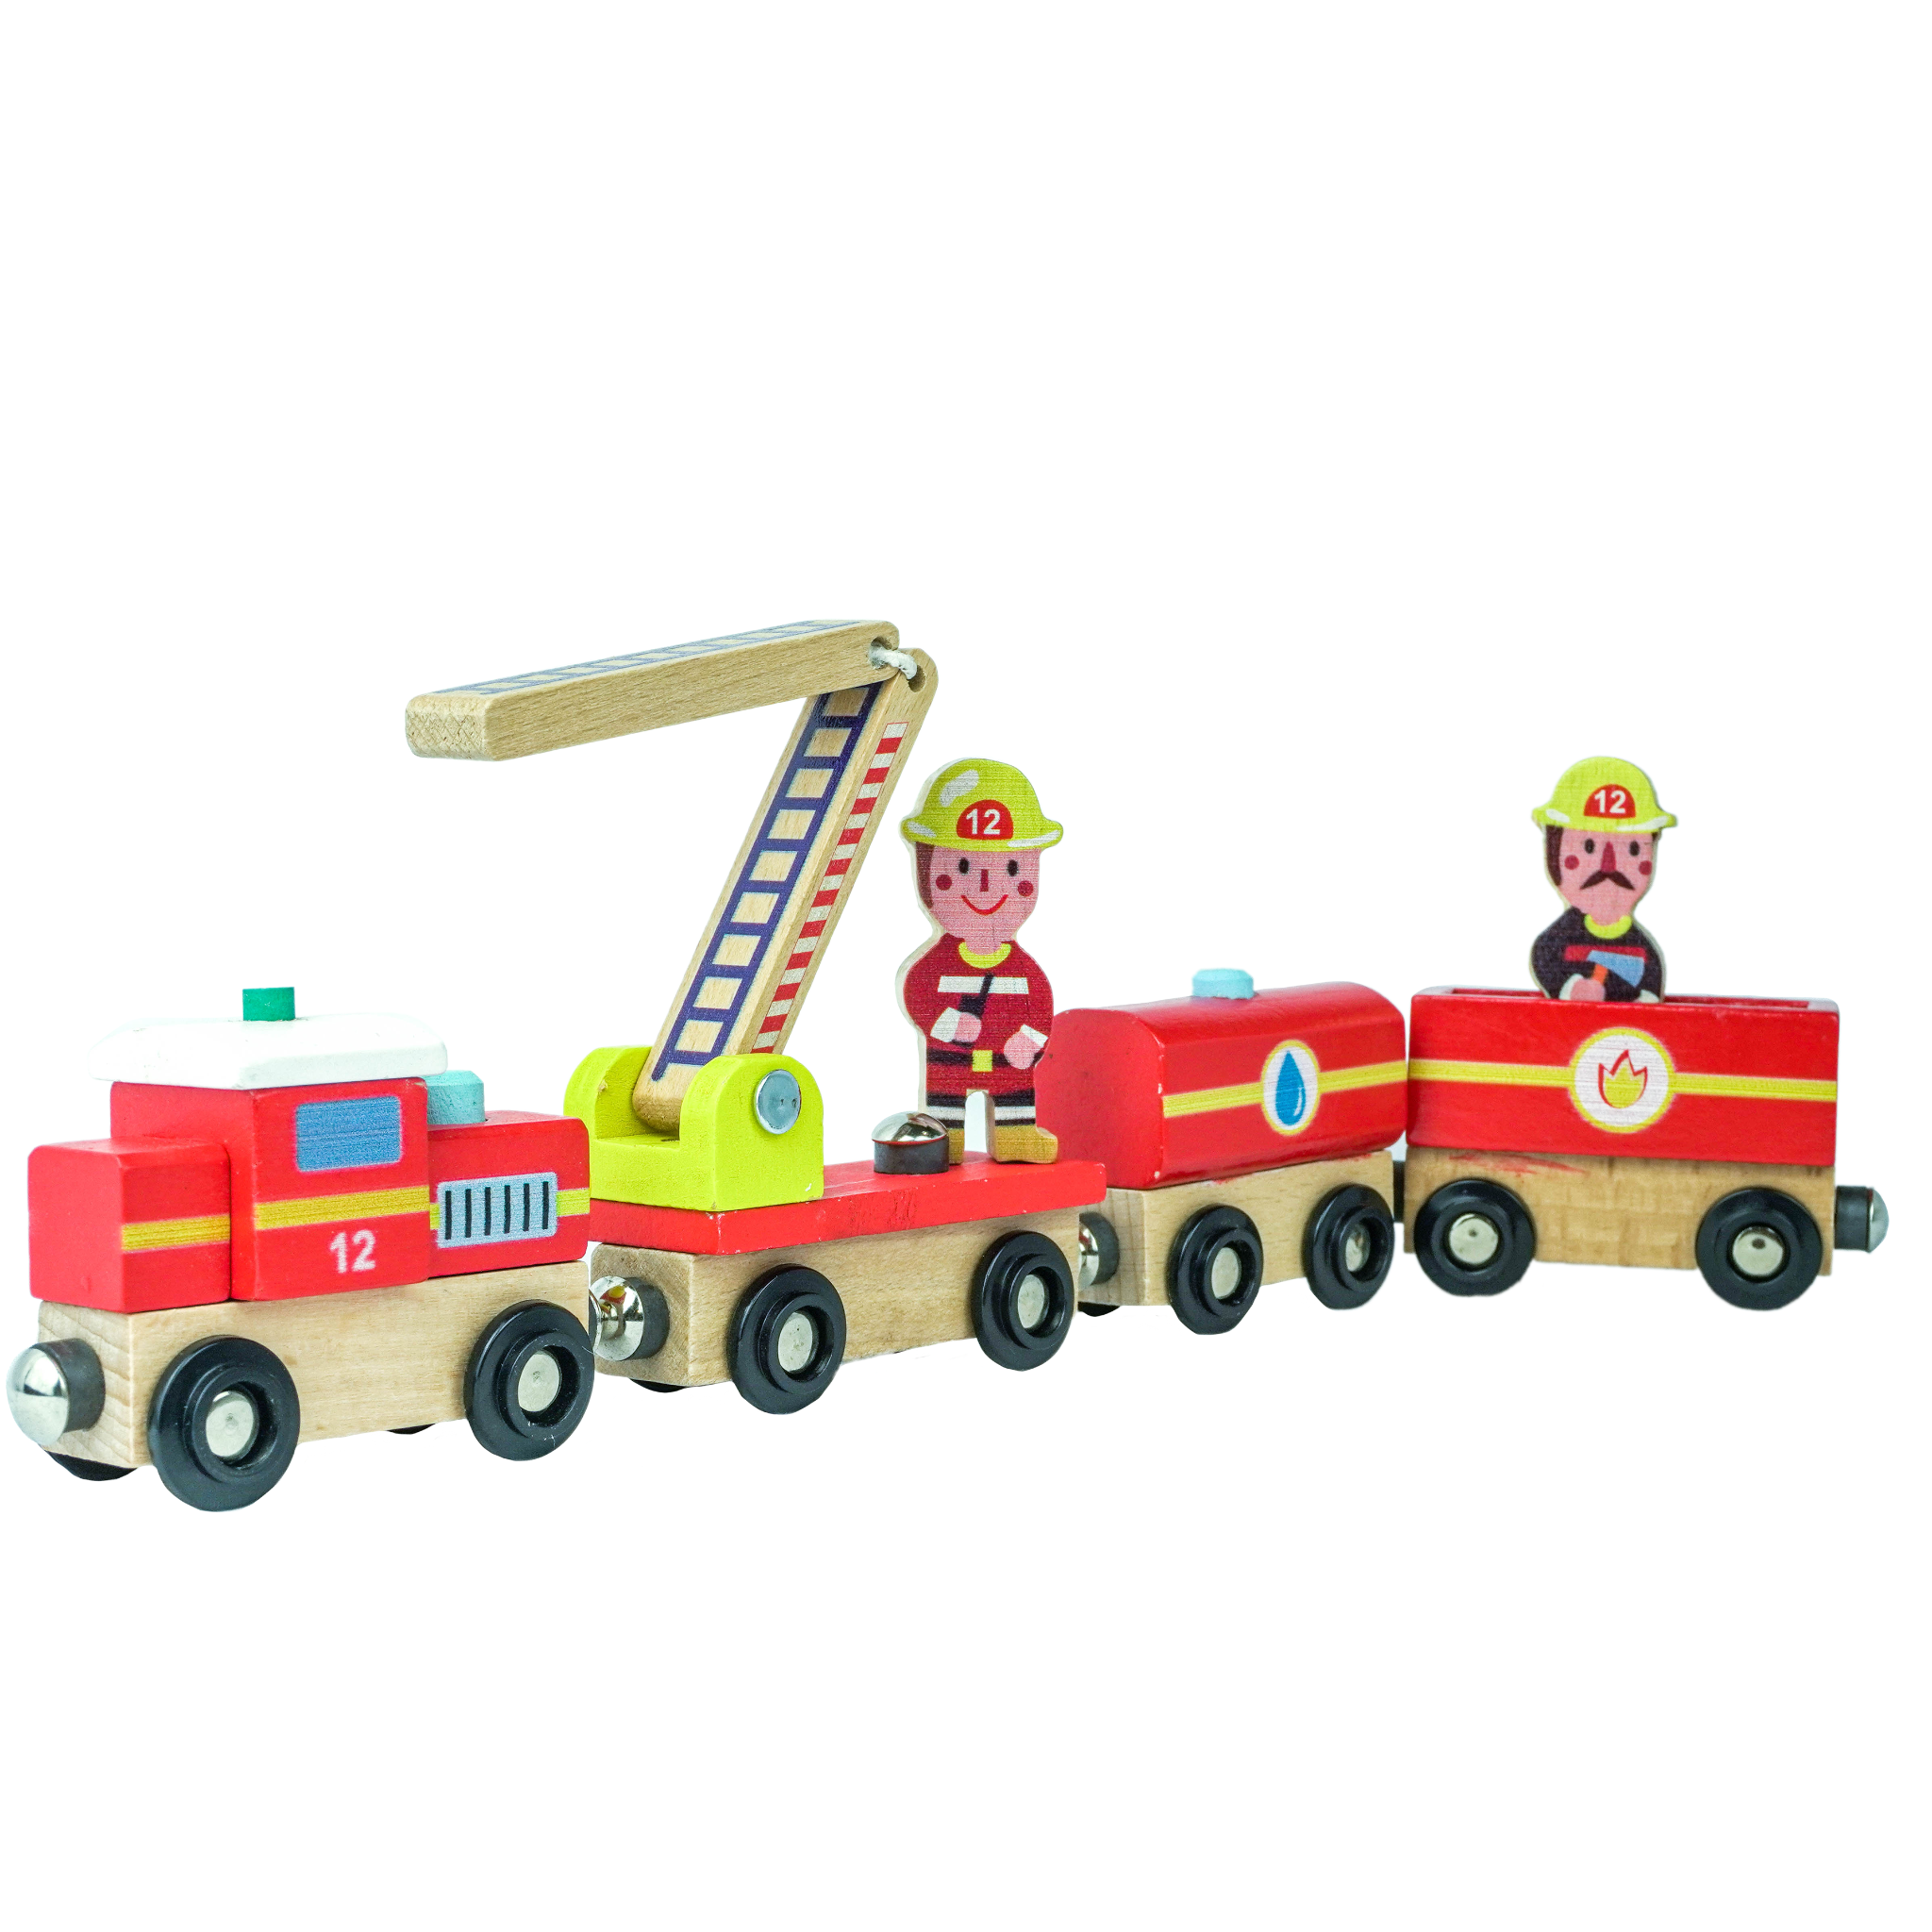  Fireman Train 